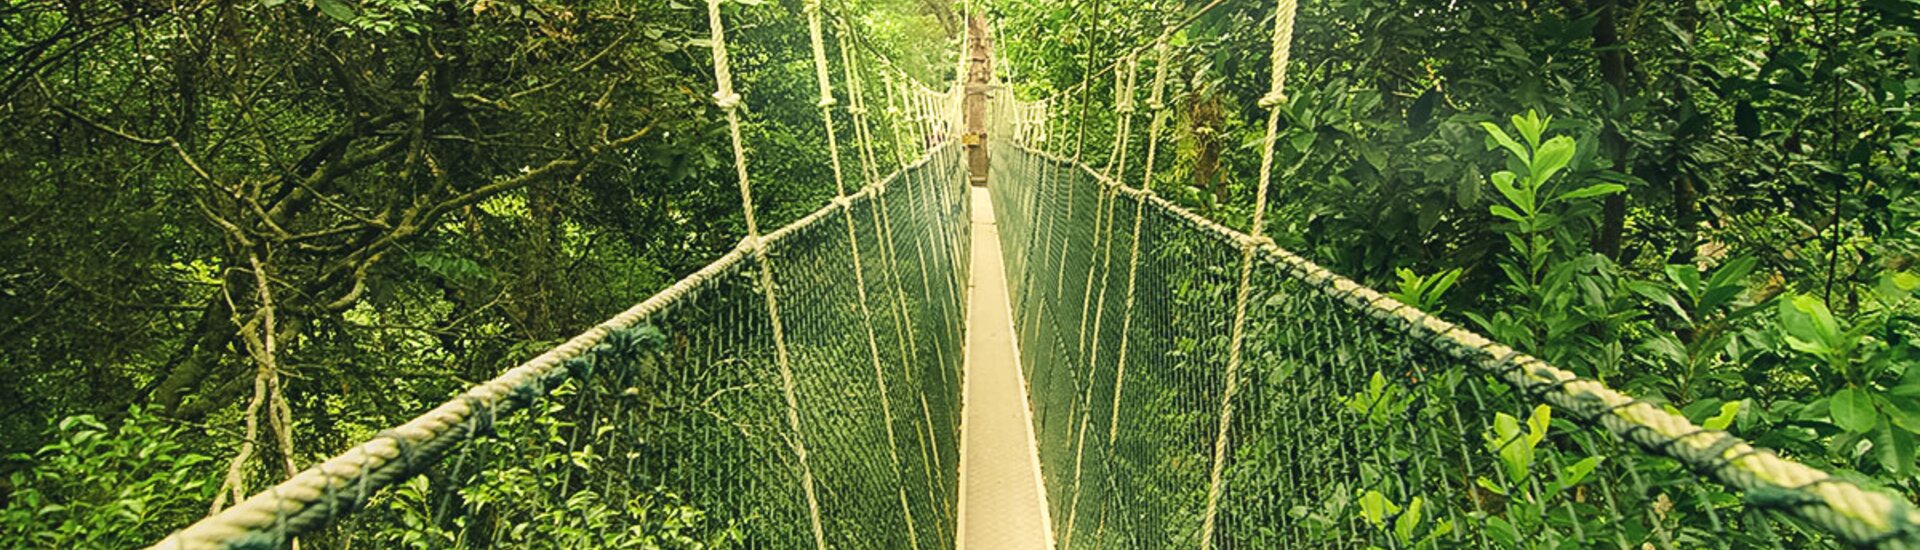 Hängebrücke im Taman Negara Nationalpark in Malaysia